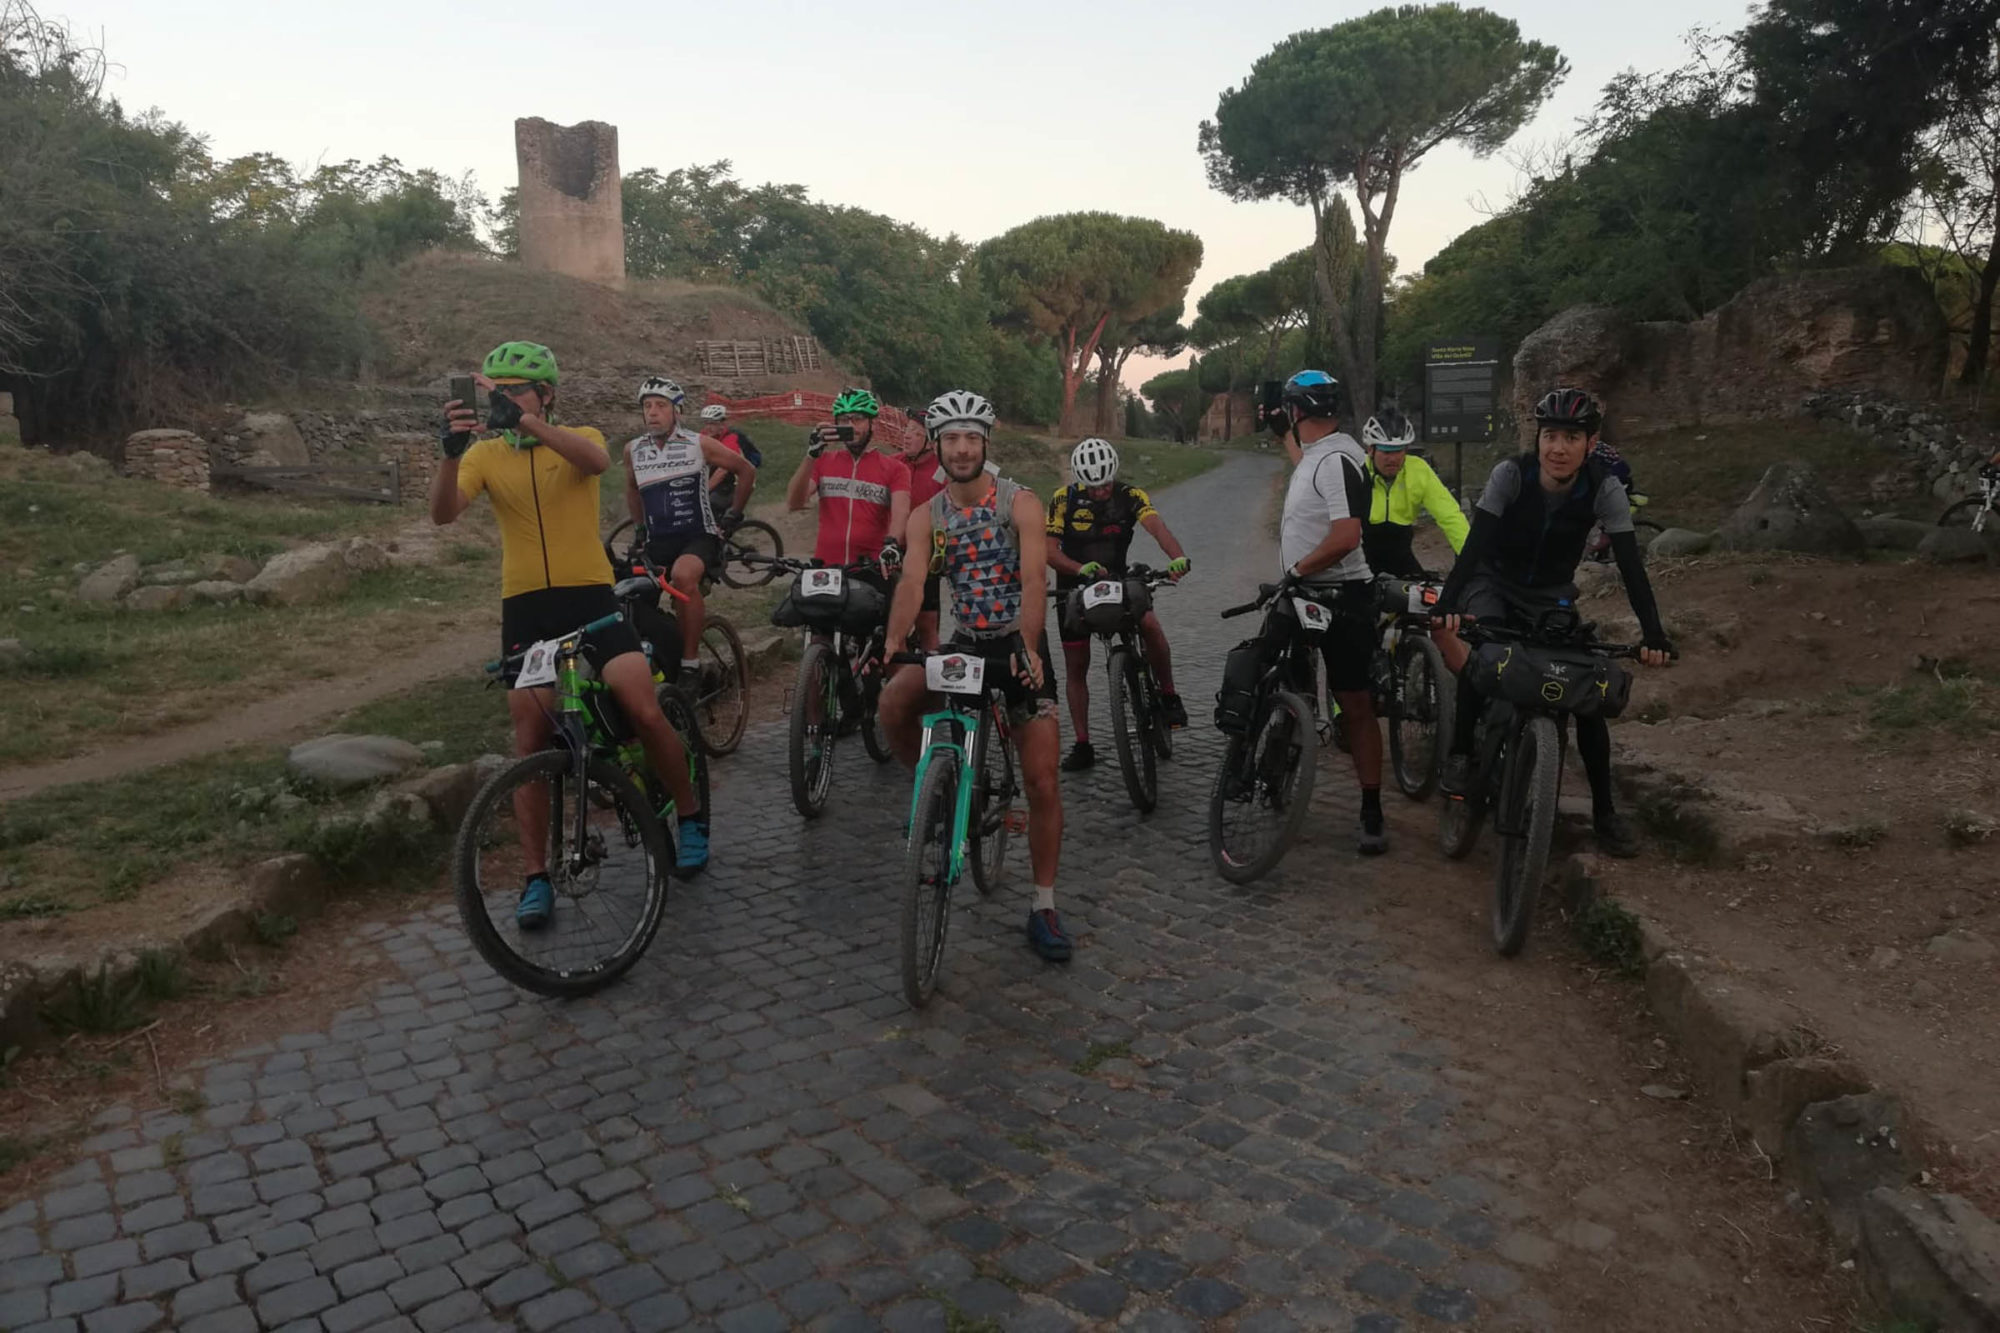 Lazio Trail 2019 Recap